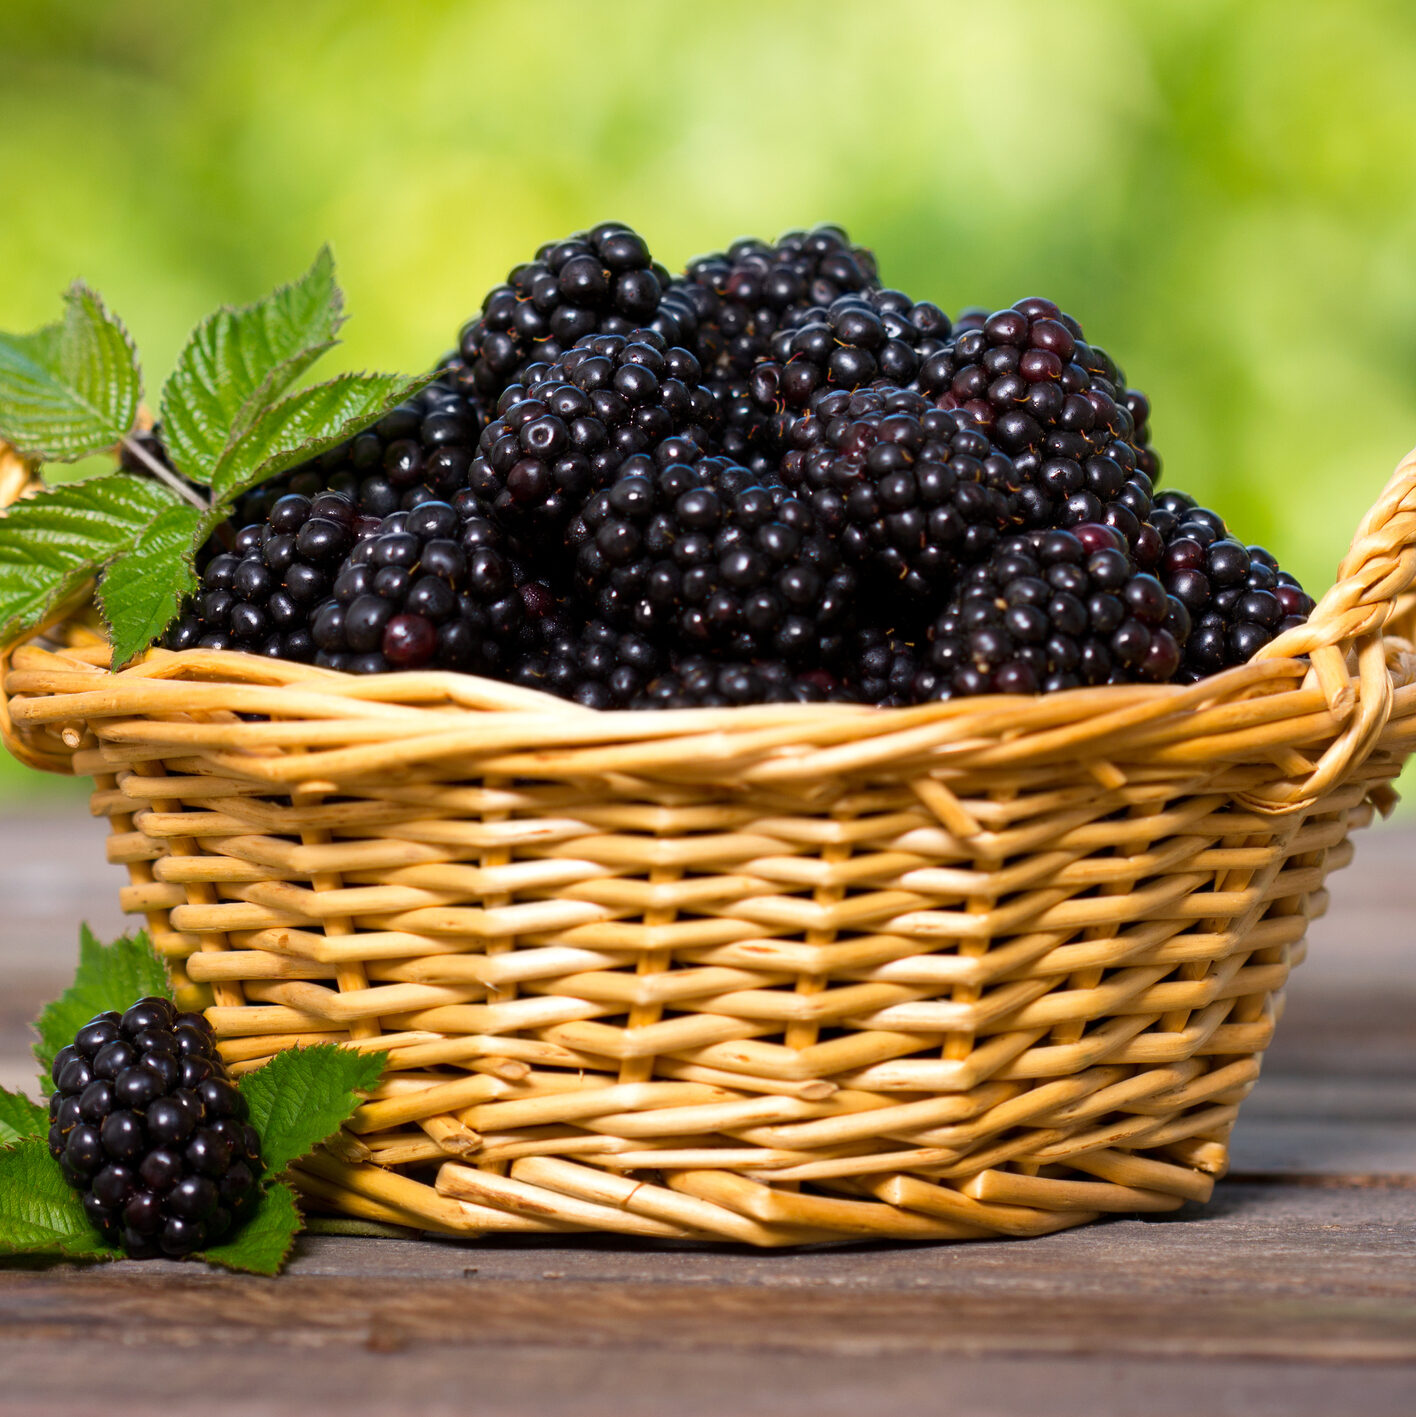 Blackberries in the basket